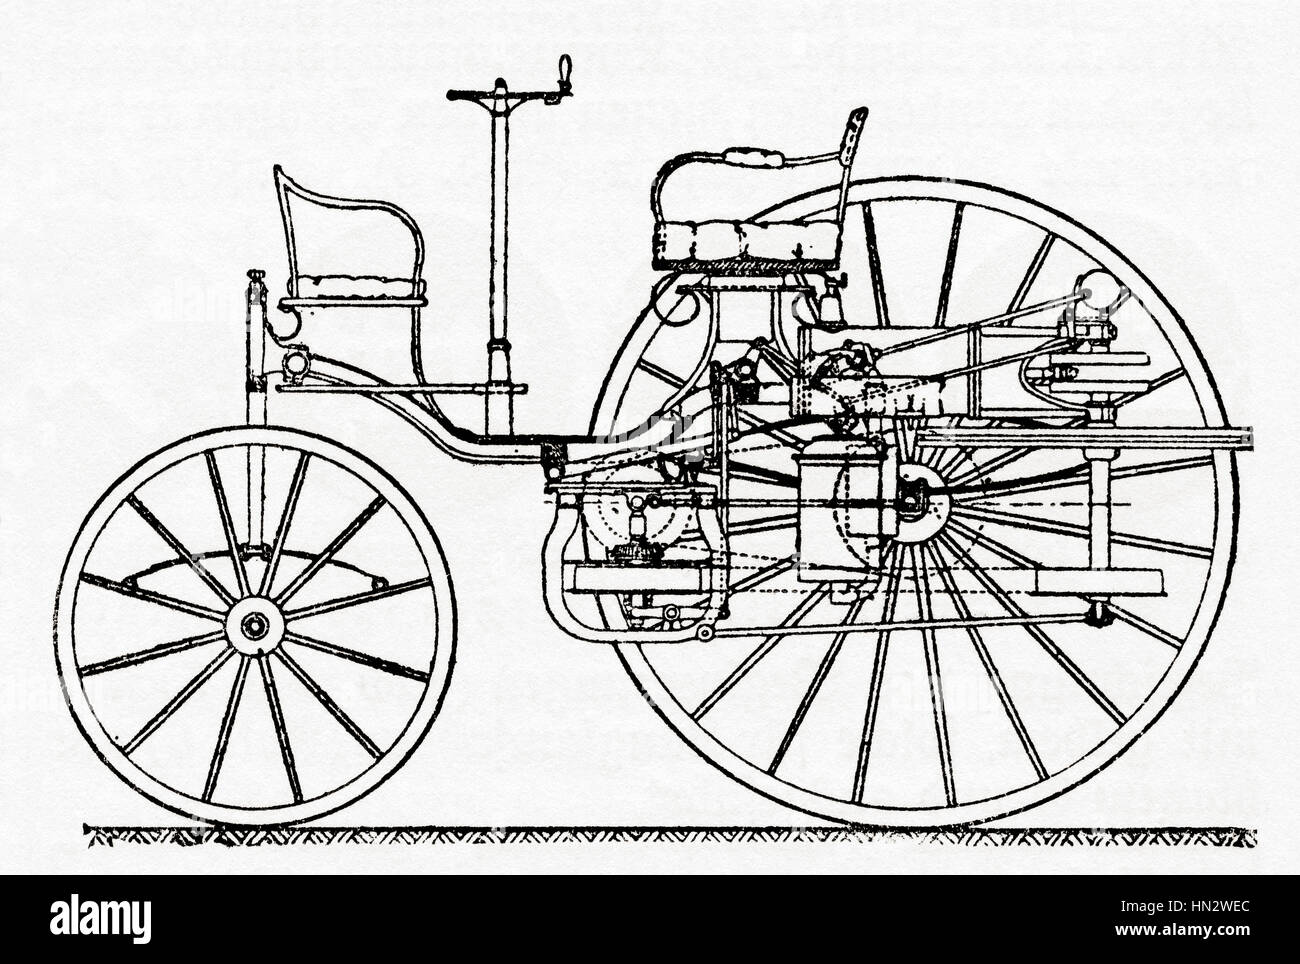 Un début de Benz Patent Motor Car, de l'automobile (1885 - 1886). De Meyers lexique, publié 1927. Banque D'Images